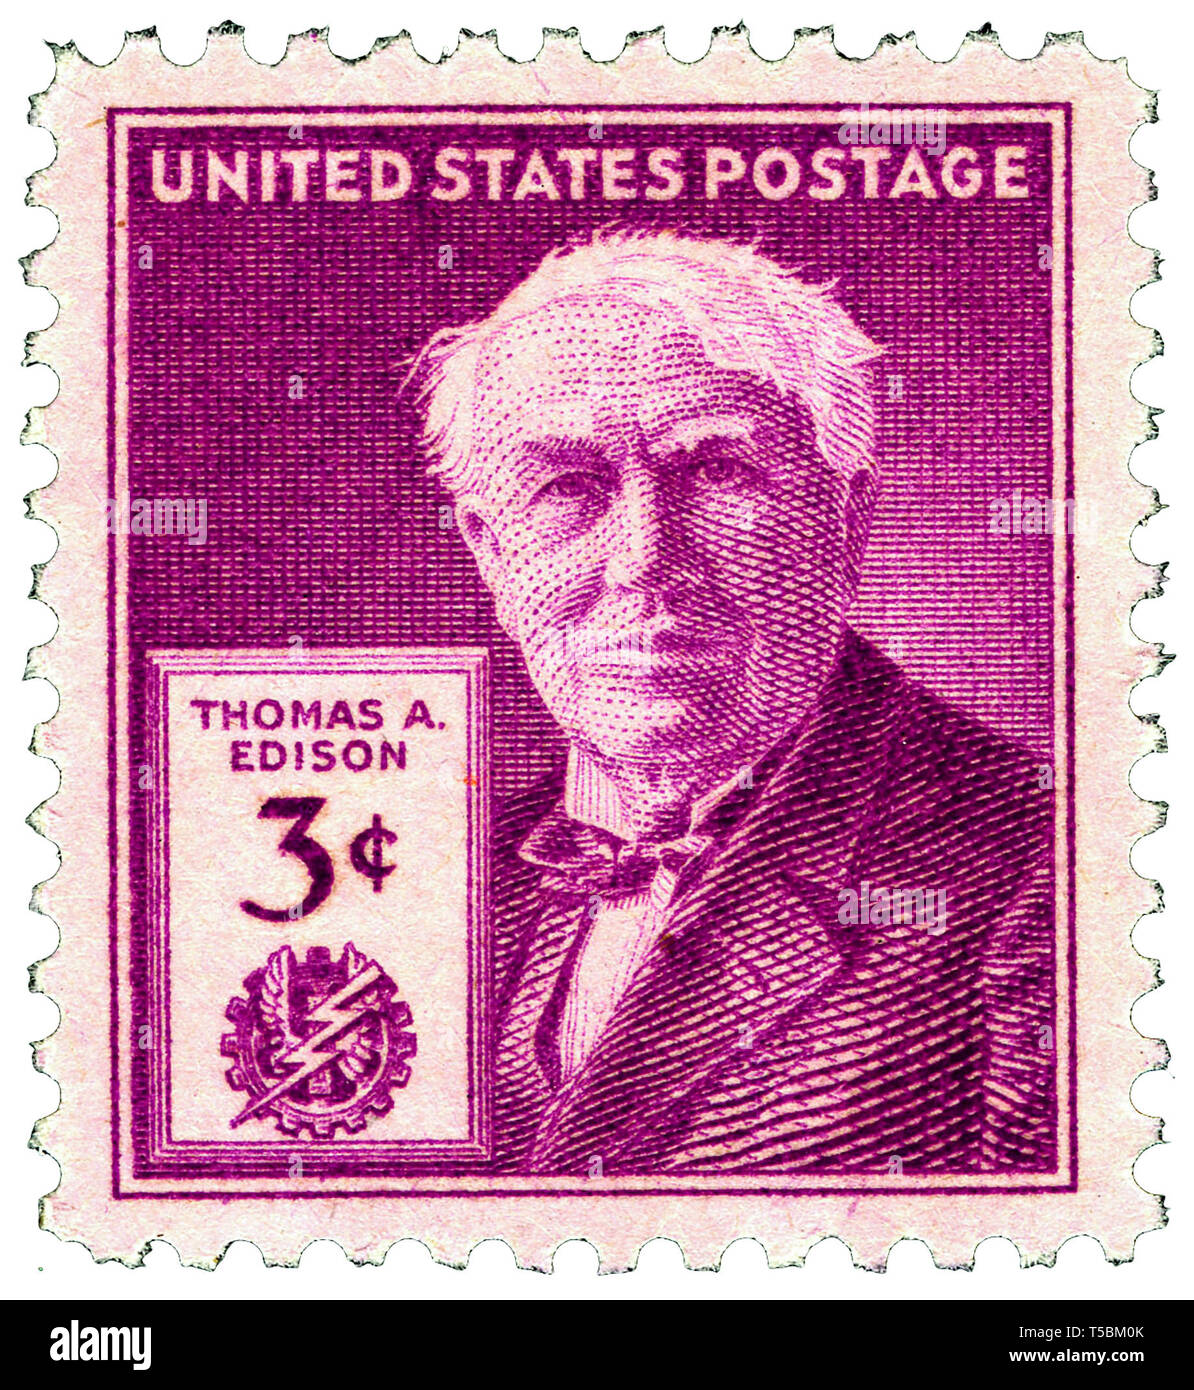 Thomas Edison (1847-1931) 3-CENT 1947 cuestión sello estadounidense, lanzado para conmemorar el centenario de su nacimiento, el 11 de febrero de 1947, el US Postal Service Foto de stock